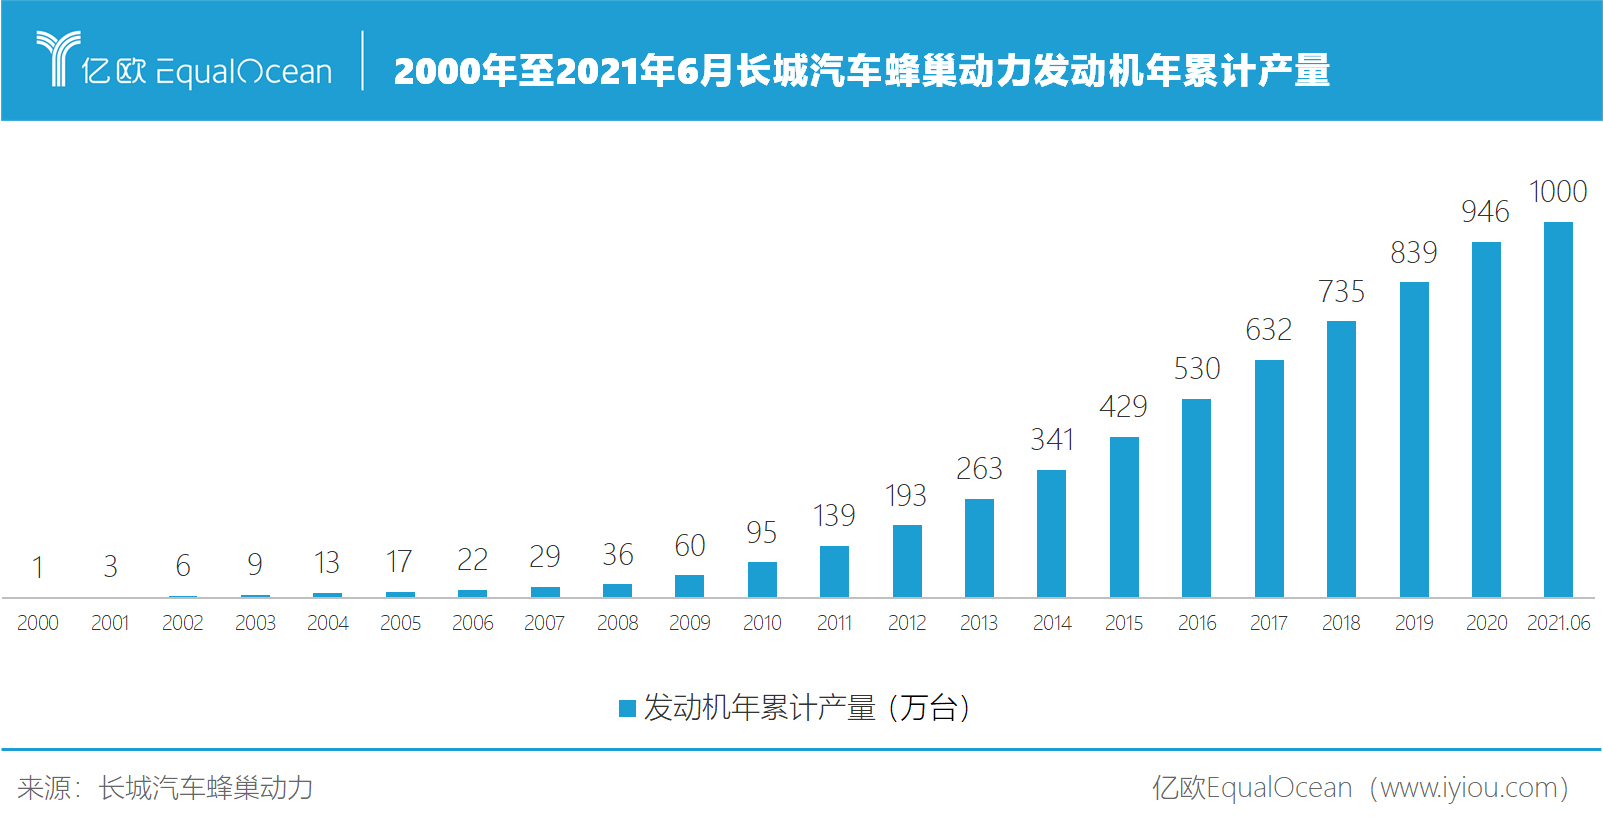 2000年至2021年6月长城汽车蜂巢动力发动机年累计产量